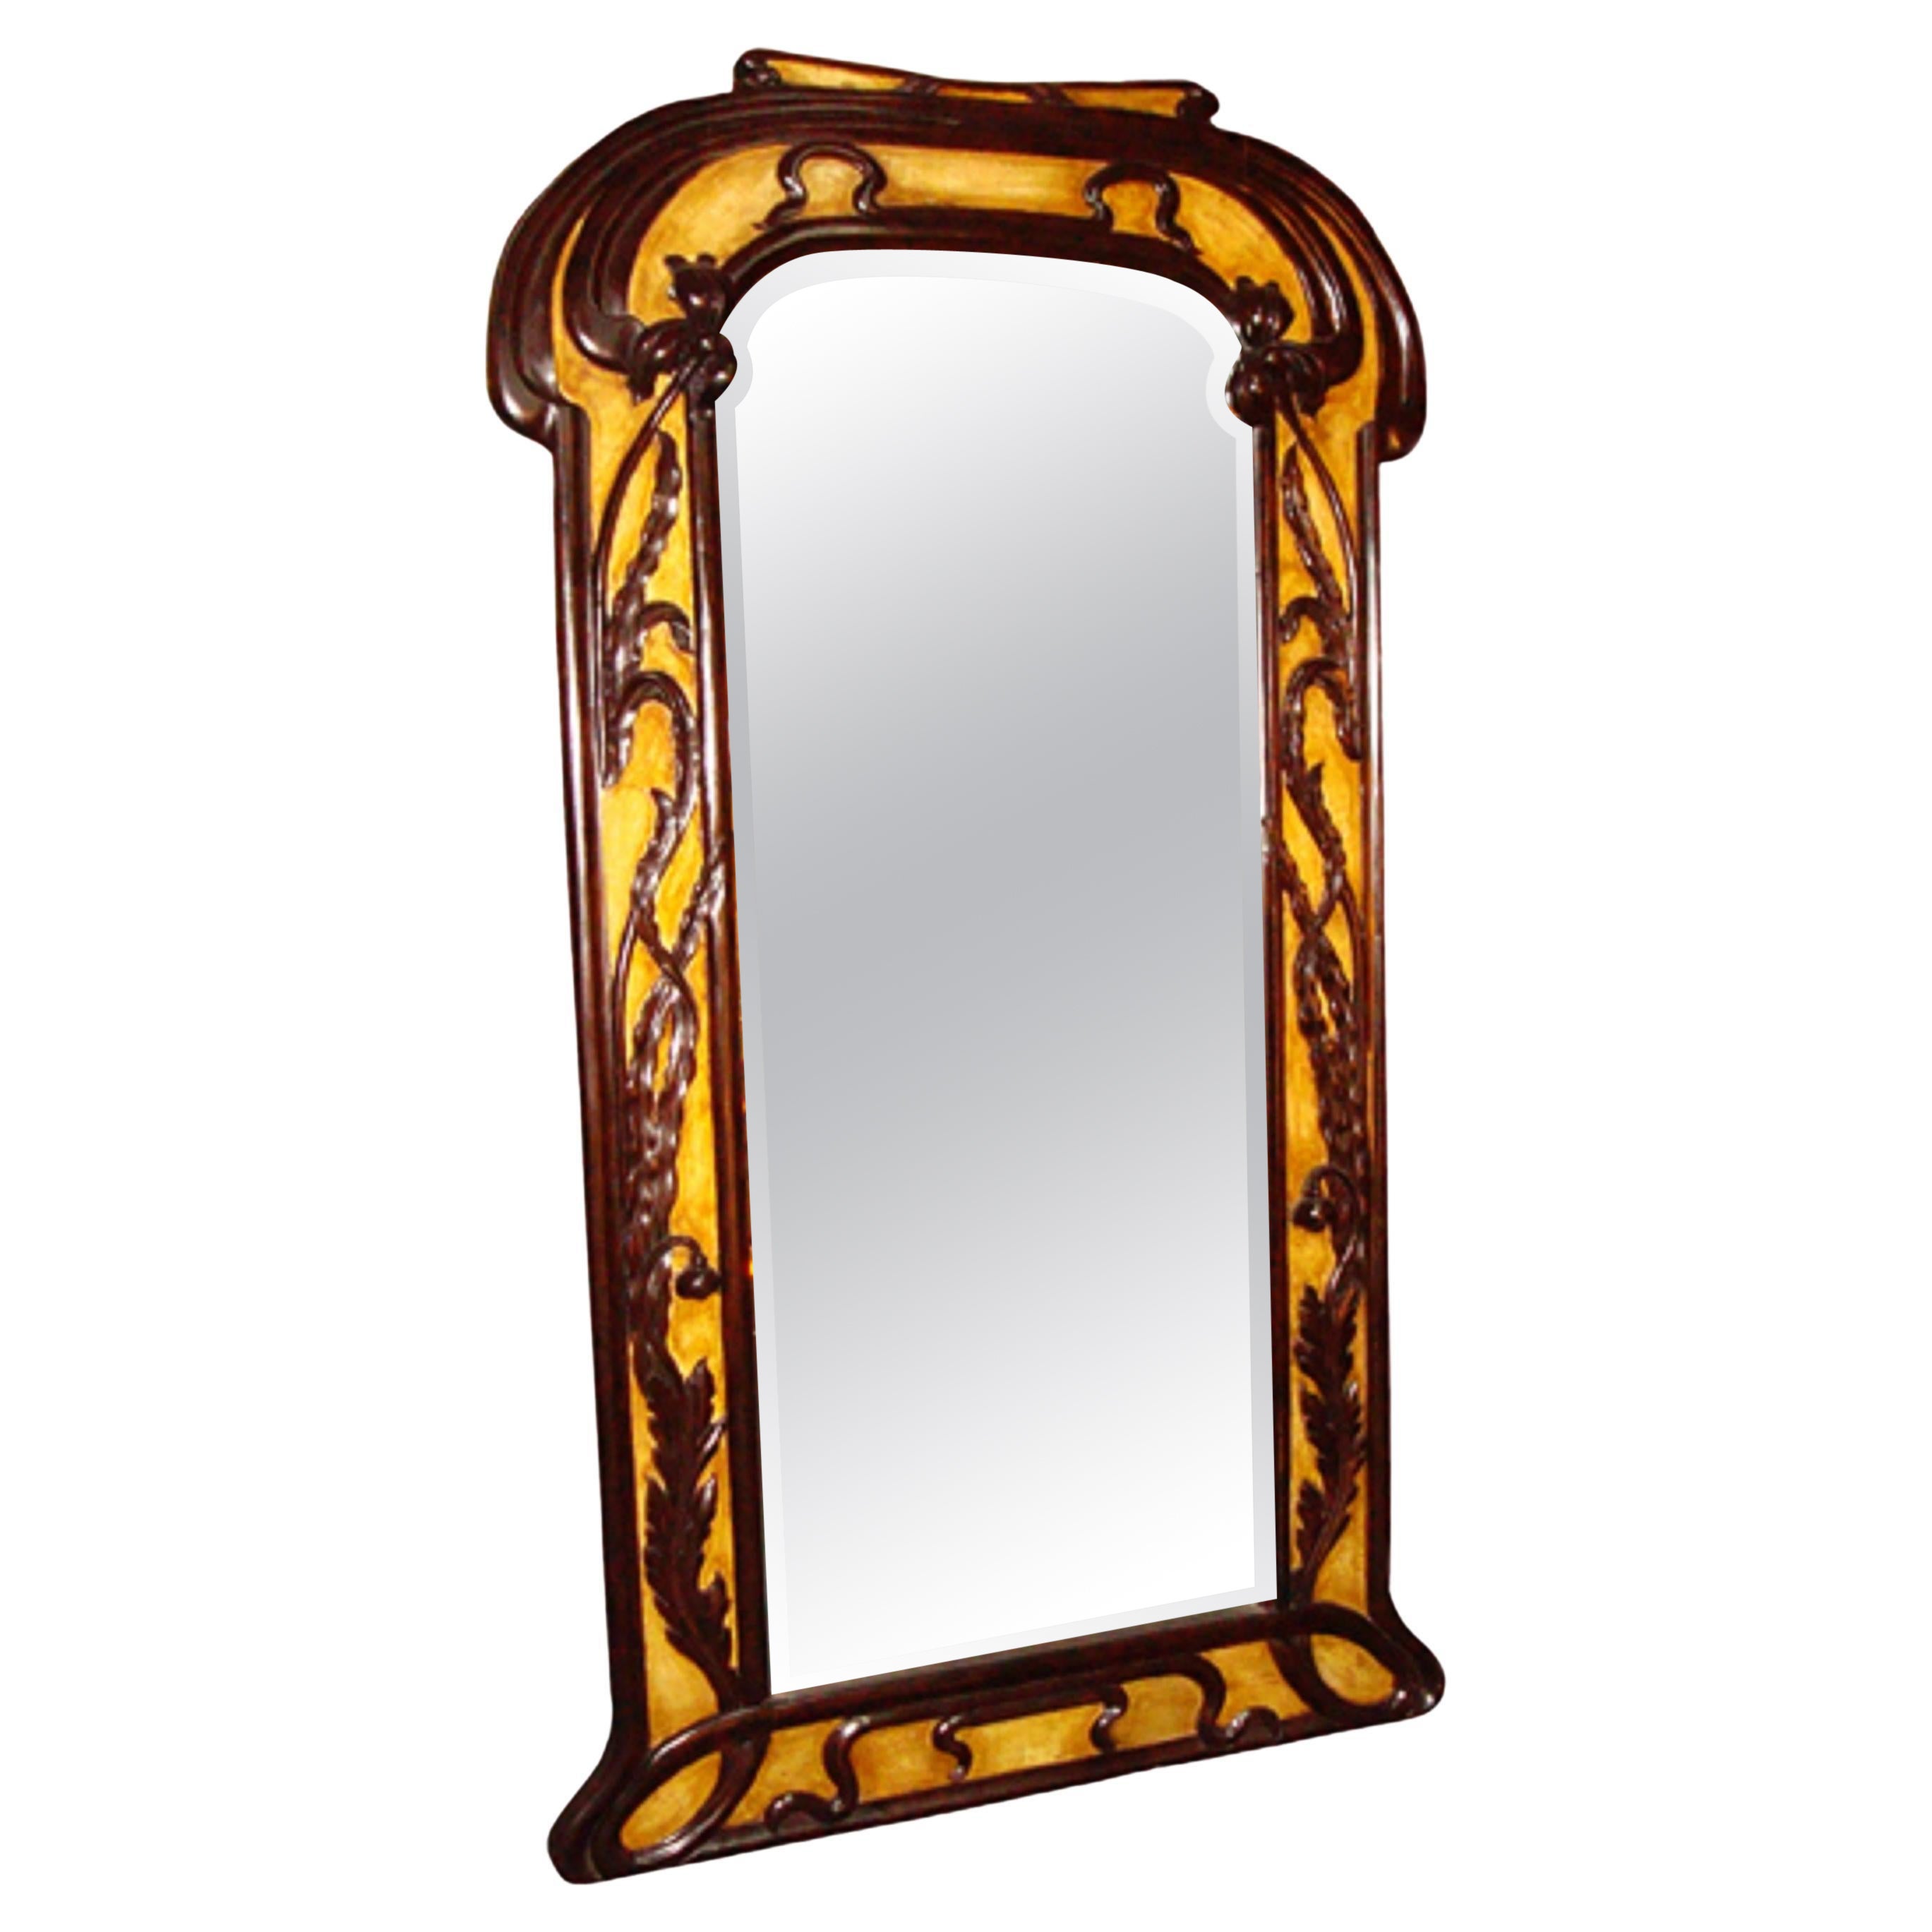 Mirror Jugendstil, Art Nouveau, Liberty, France, parchment leather, wood , mirror For Sale